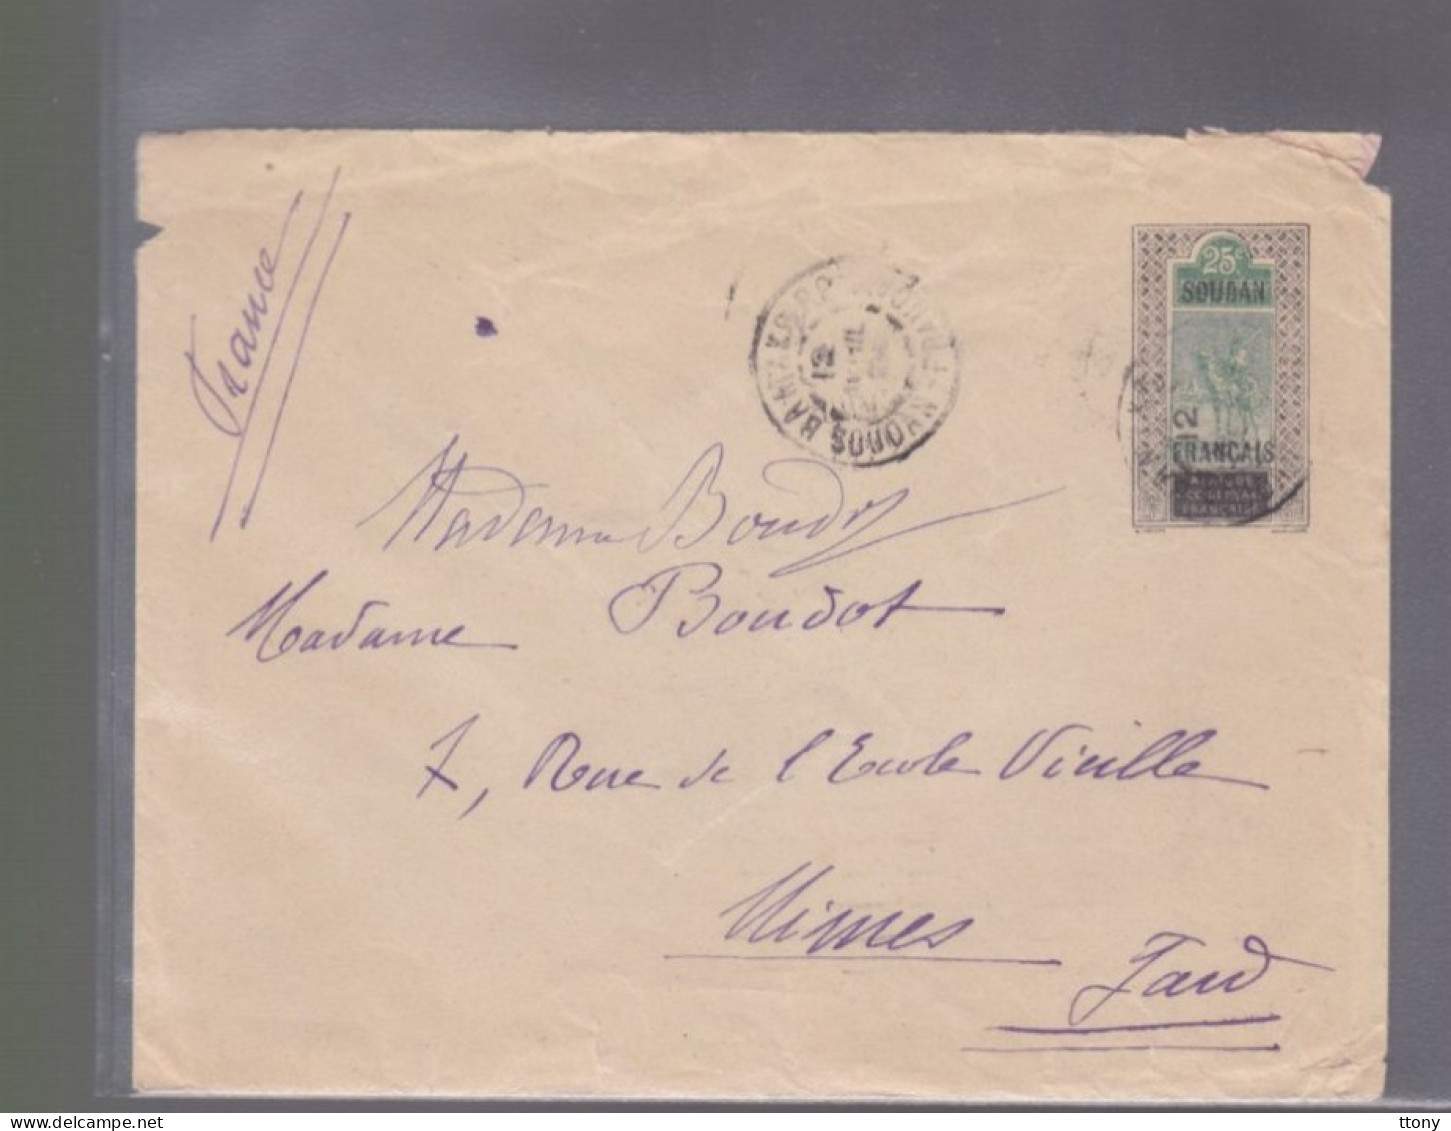 1  Timbres Soudan Français     25 C   Année 1924  Destination   Nîmes      Gard ( Sans Correspondance ) - Lettres & Documents